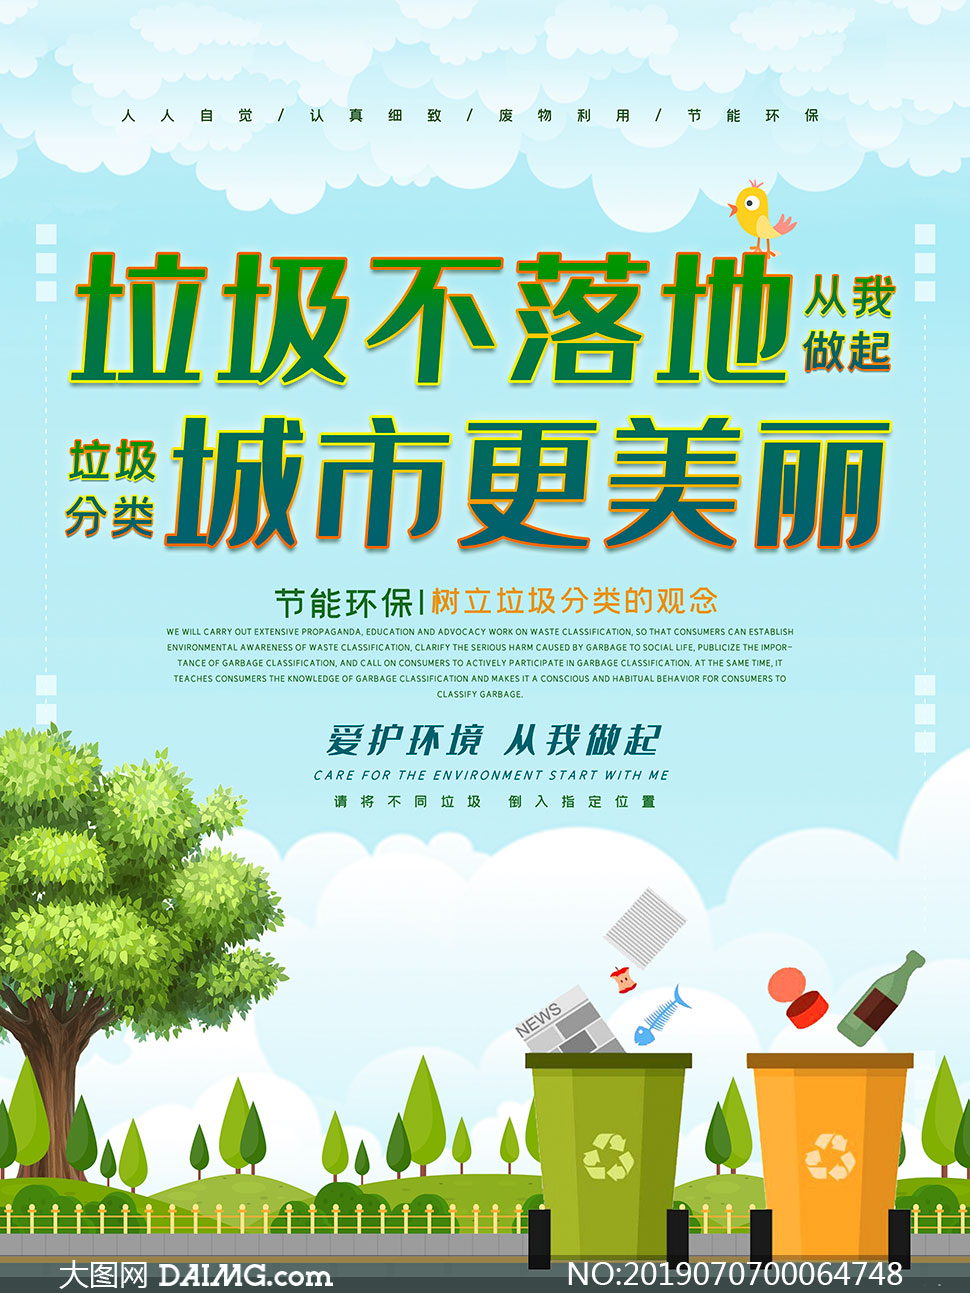 爱护环境垃圾分类宣传海报psd素材